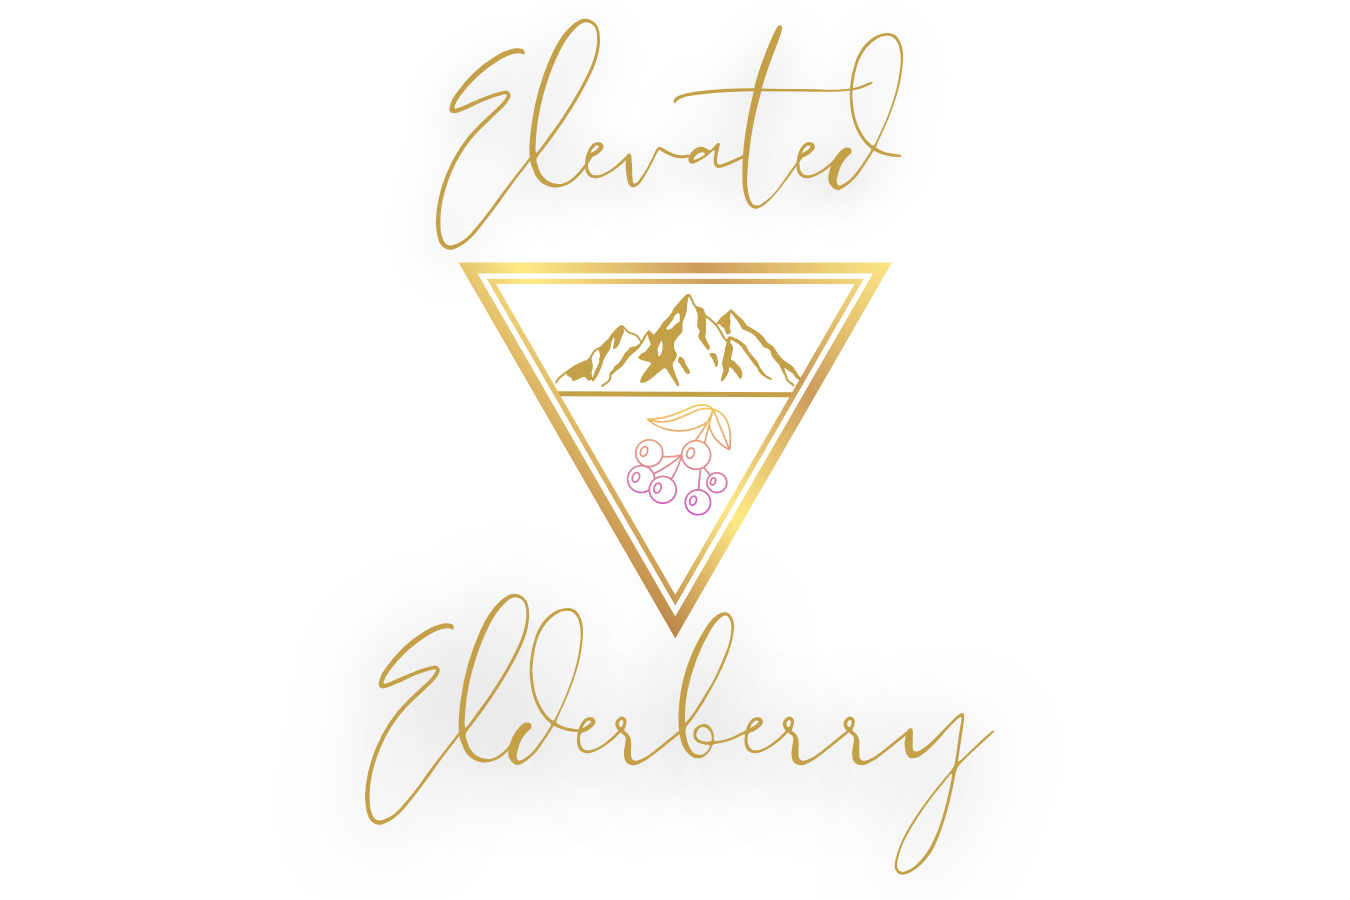 Elevated Elderberry